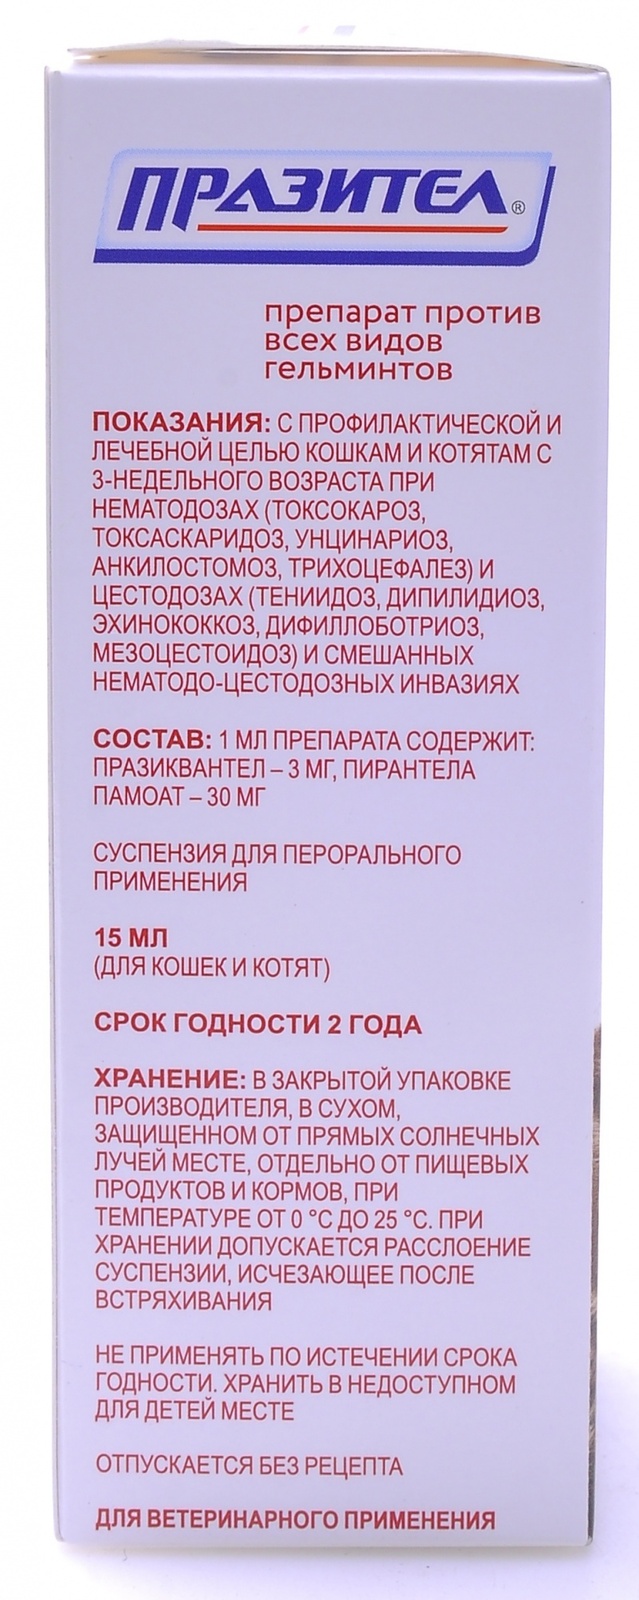 Астрафарм Празител от глистов для котят и кошек (суспензия), 15 мл |  Petshop.ru